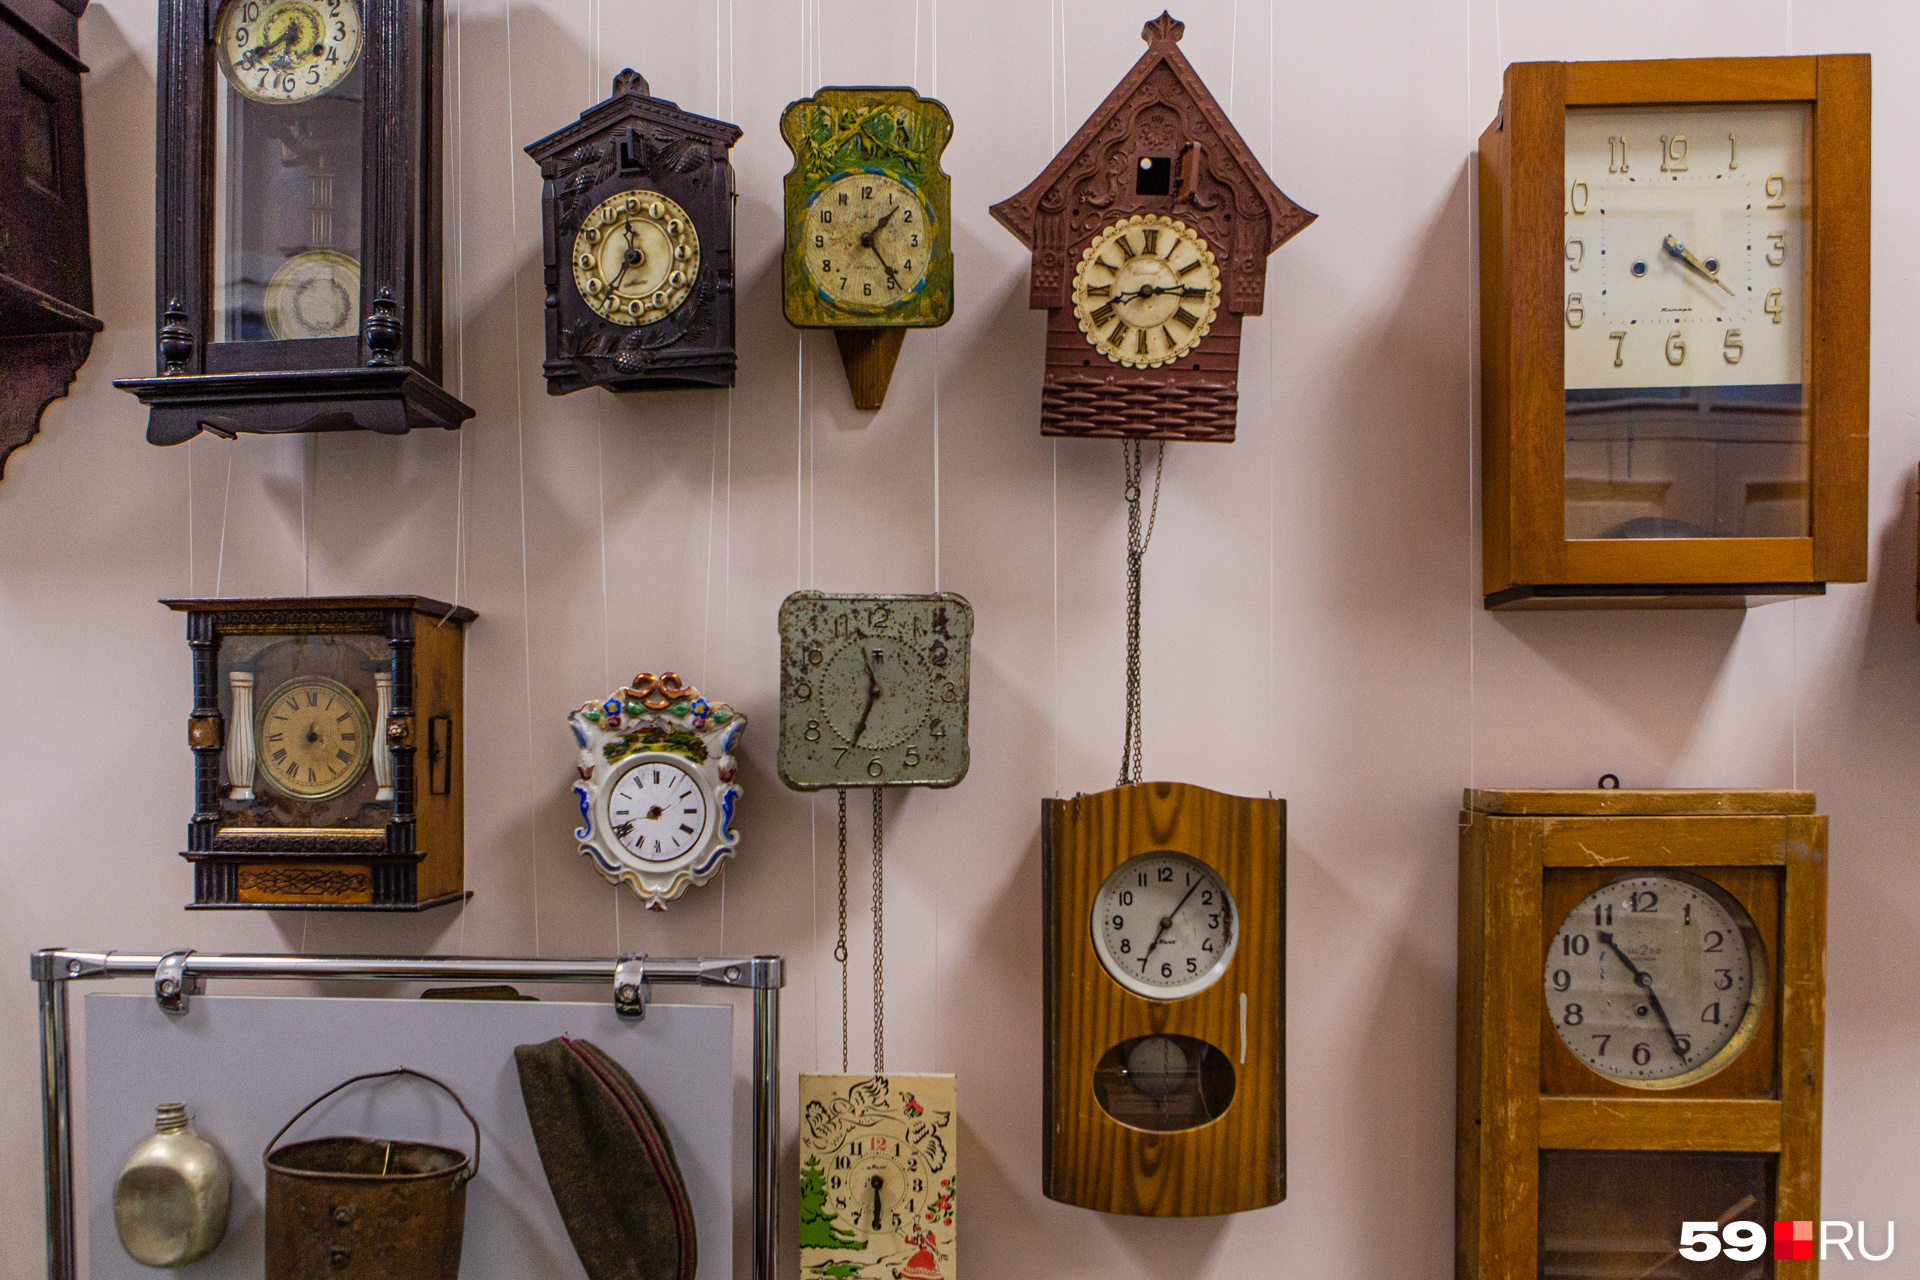 На выходе из музея посетителей провожает коллекция часов. Музейщики хотят вернуть им ход, чтобы наполнить зал тиканьем и боем